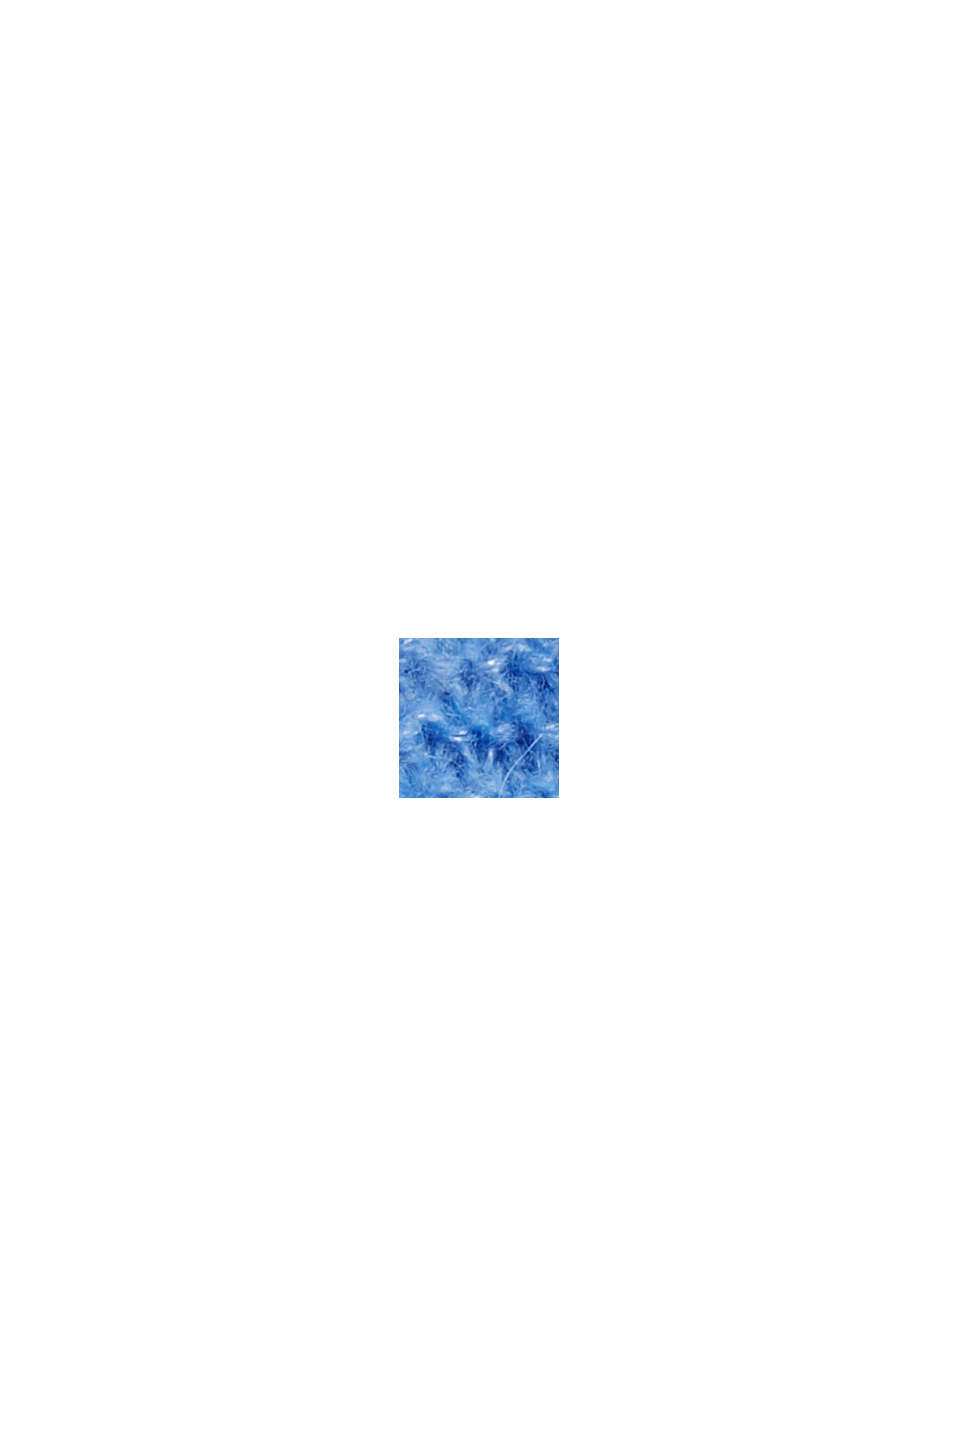 S vlnou/alpakou: pulovr se vzorovanou pleteninou, BRIGHT BLUE, swatch